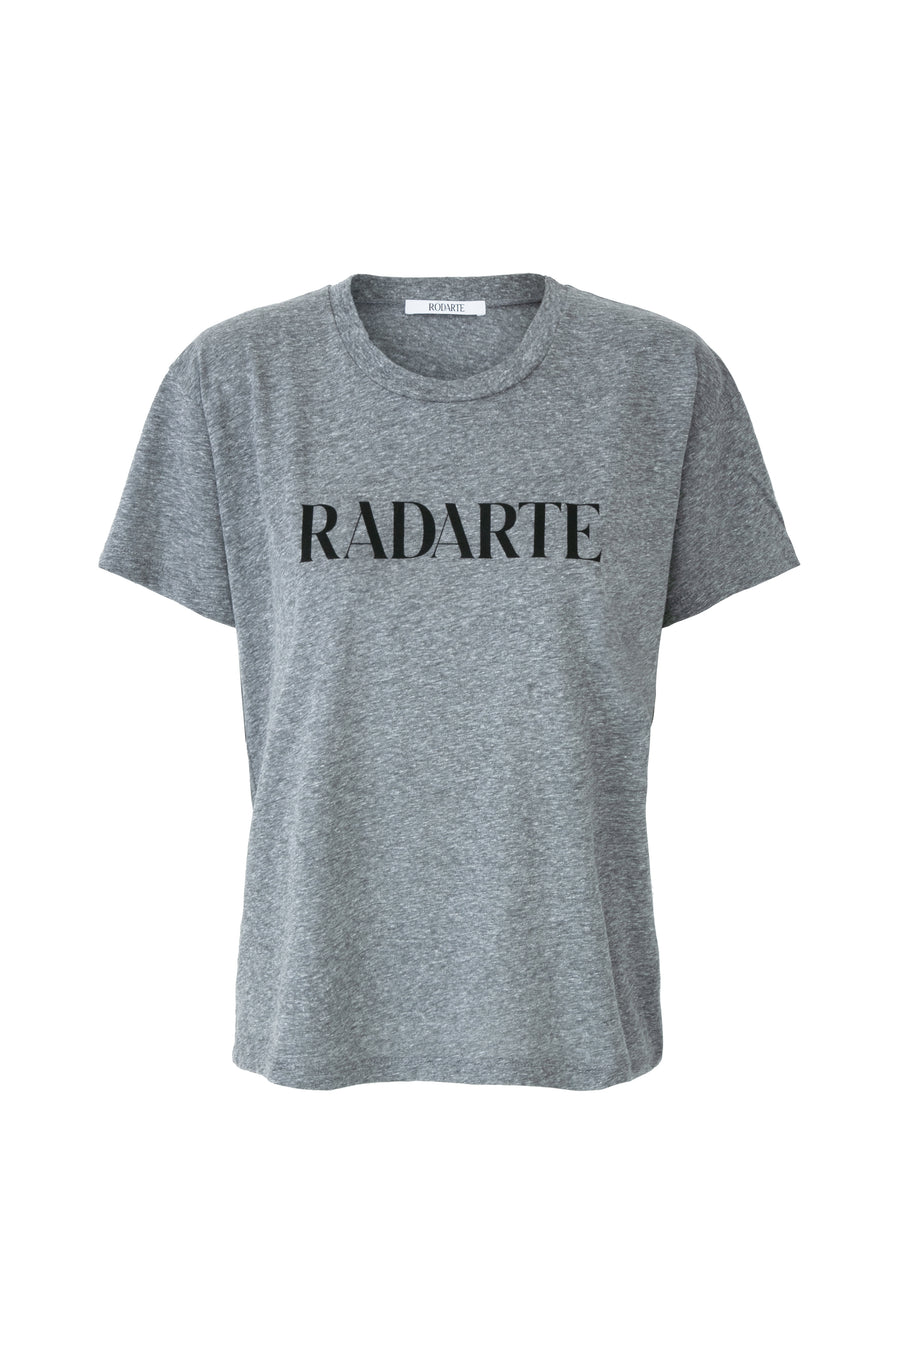 Grey Radarte Logo T-Shirt